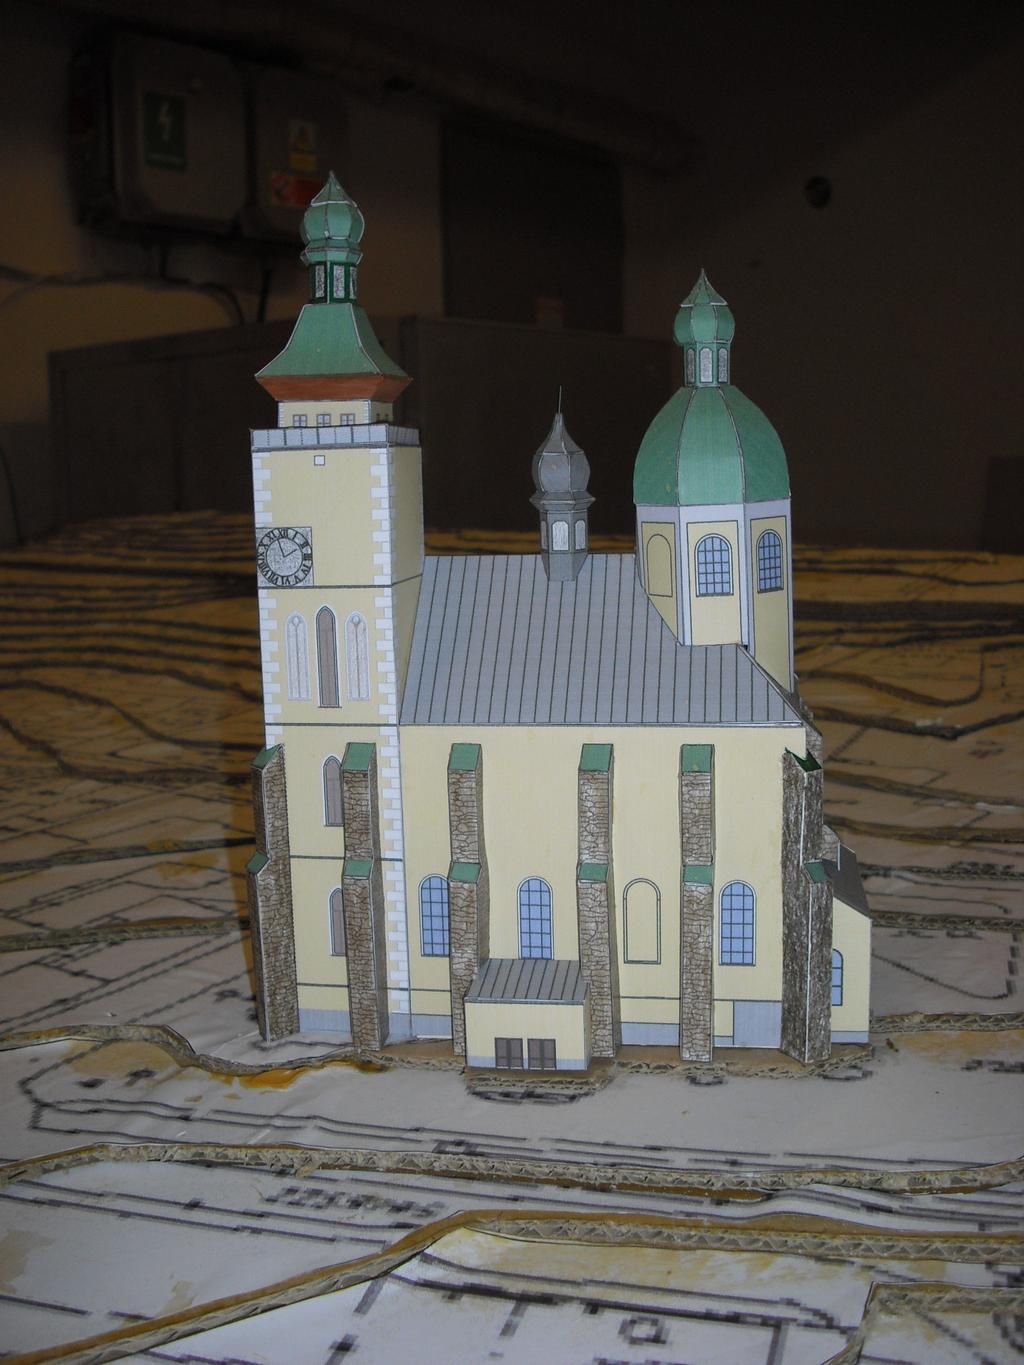 Po dokončení všech objektů, pro které je připravený terén, bude nad celým modelem provedeno zakrytí krytem z plexiskla, z toho důvodu jsme vytvořili i model kostela, přestože se nenachází v námi